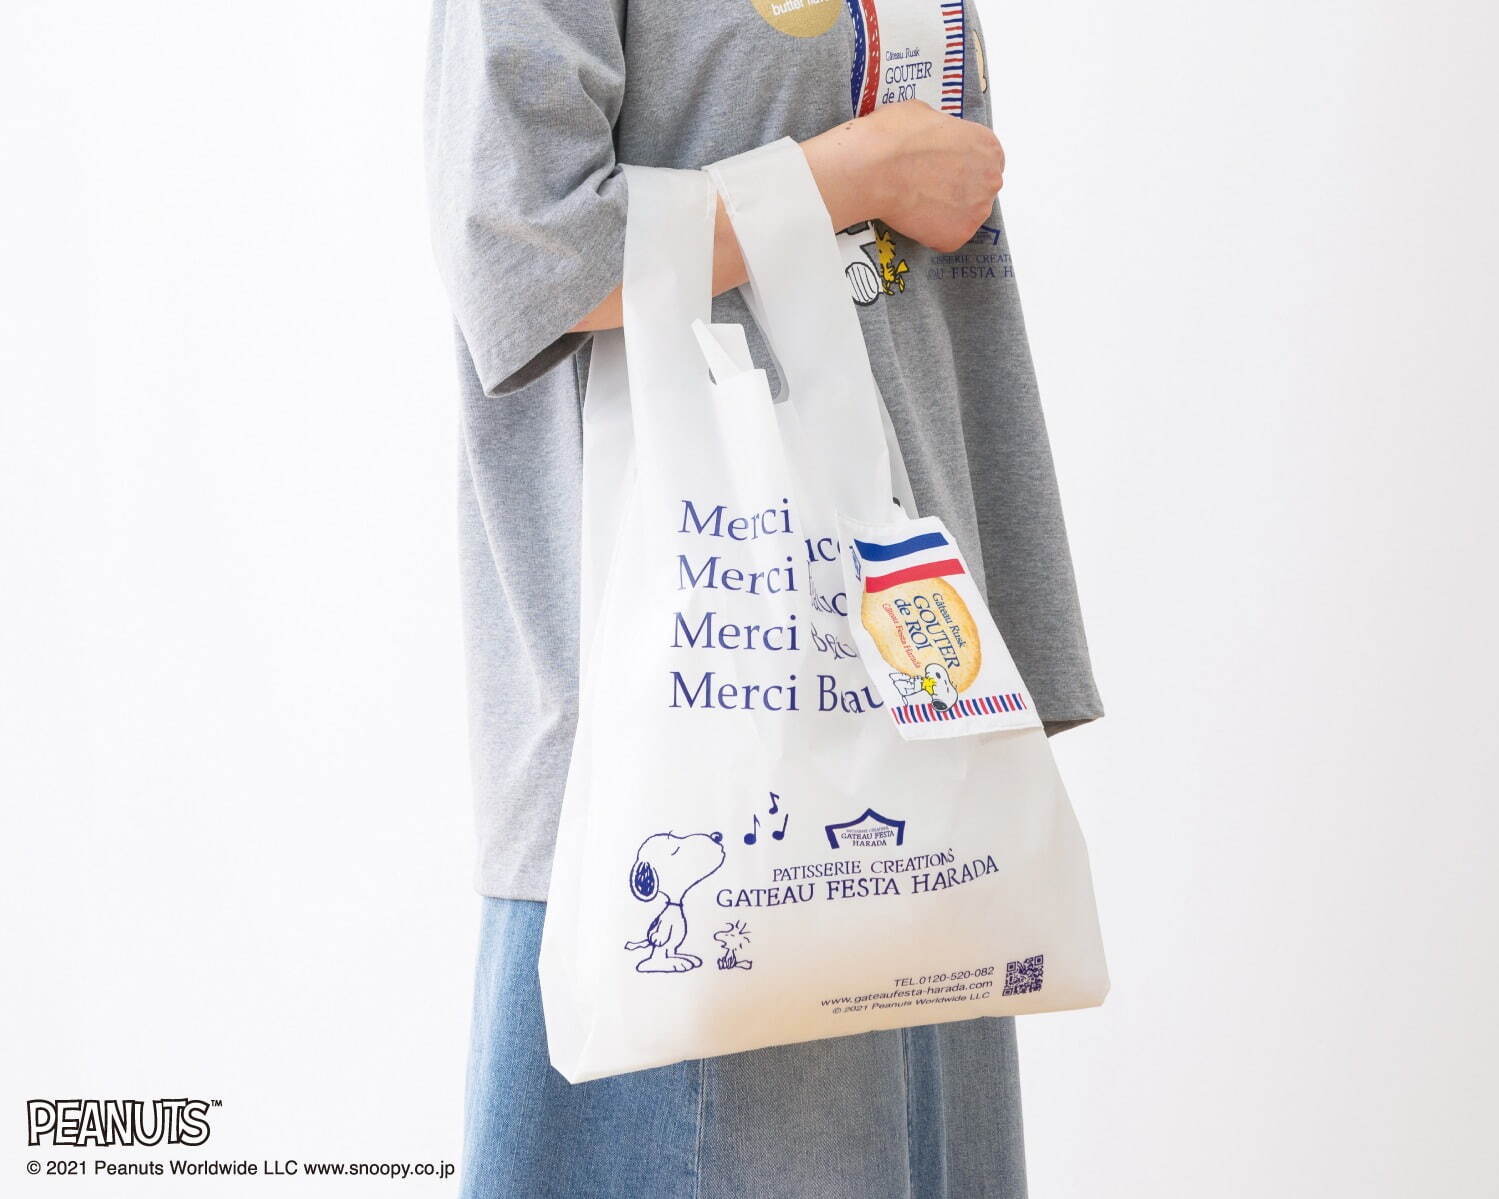 「スヌーピーレジ袋 デザインバッグ」3,080円
※専用の「グーテ・デ・ロワ」デザインの収納袋付き。